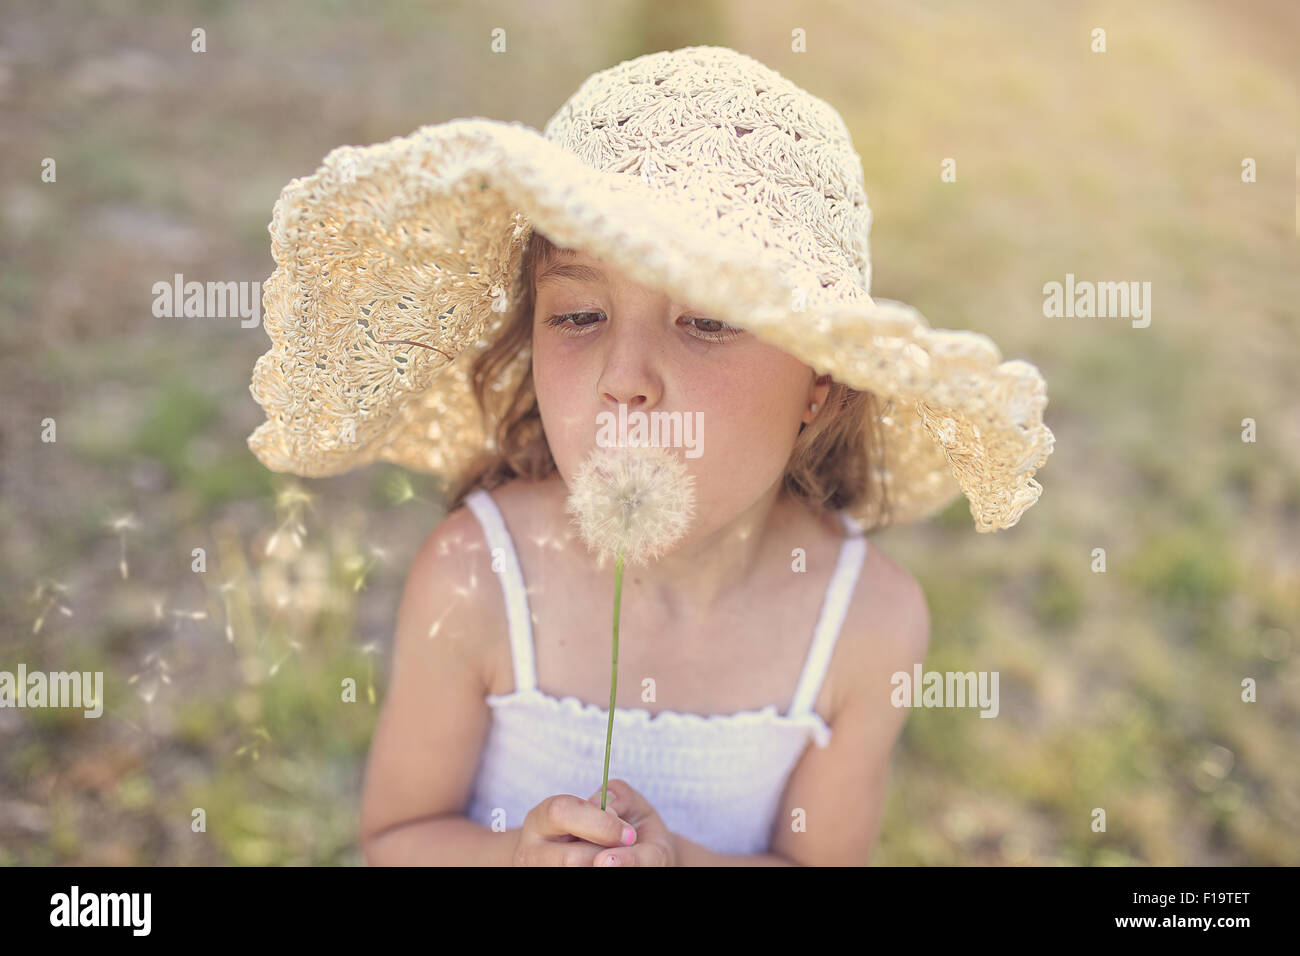 Jeune fille dans un chapeau blowing dandelion Banque D'Images